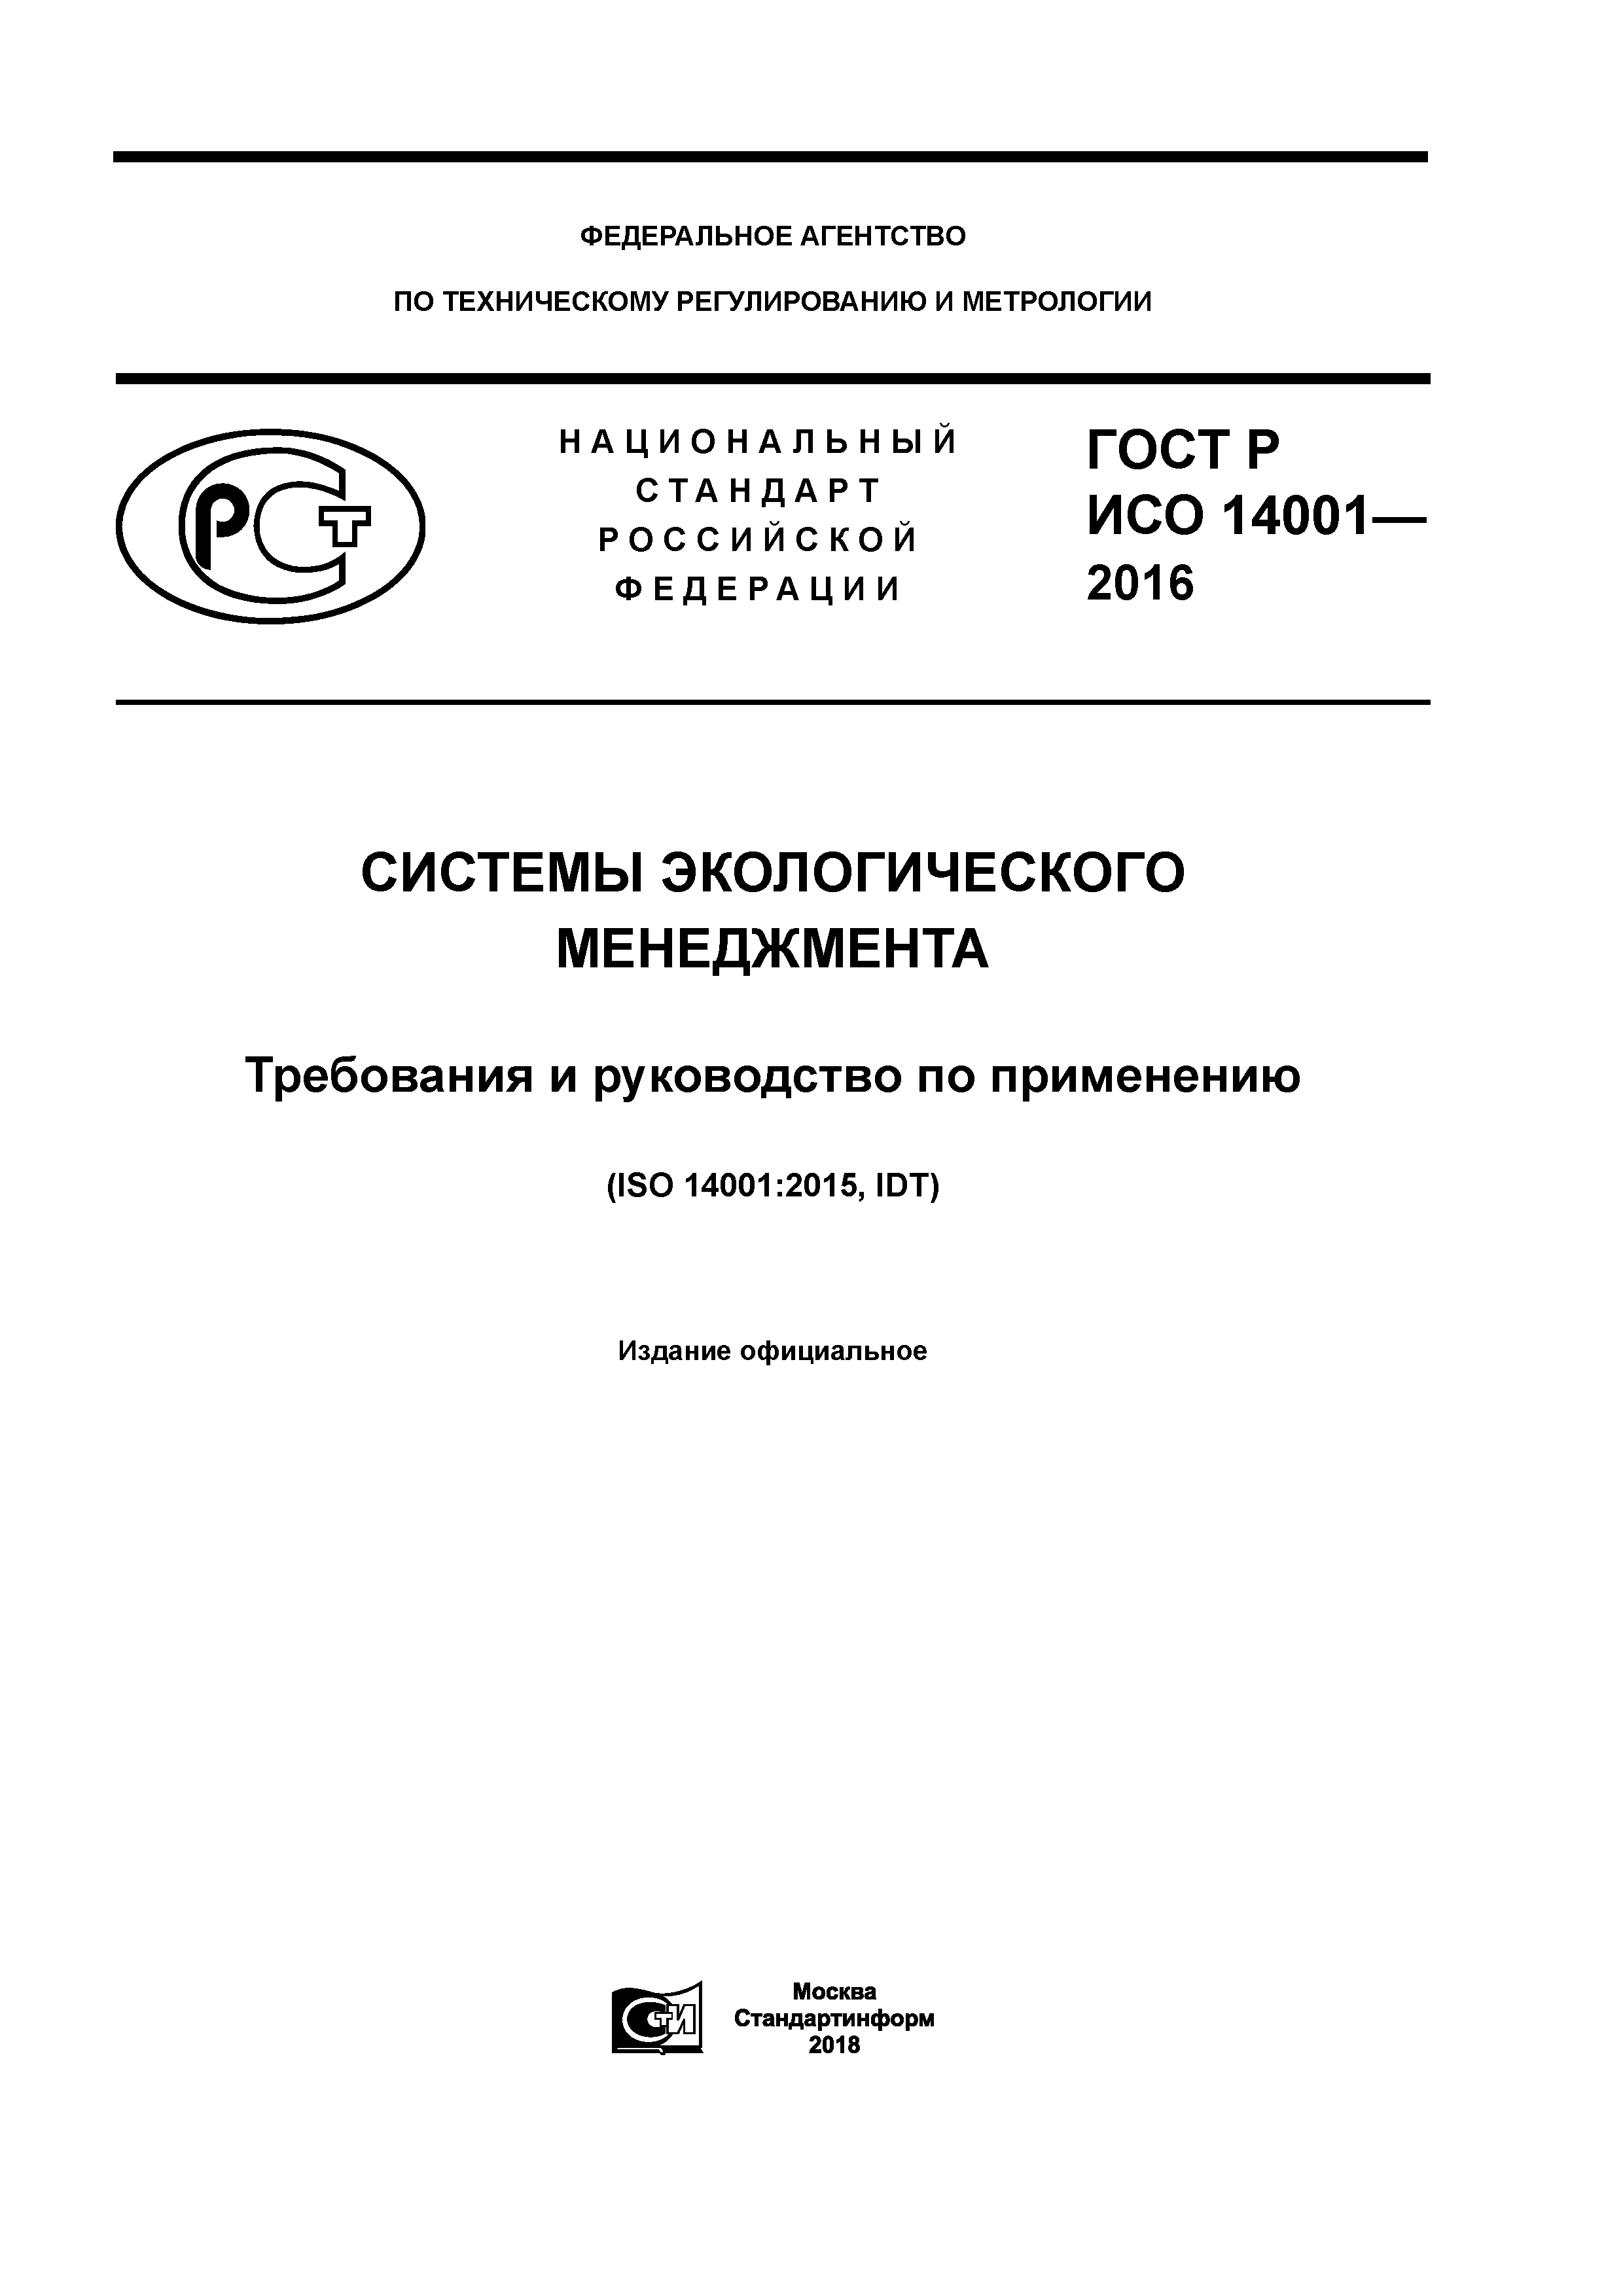 ГОСТ Р ИСО 14001-2016